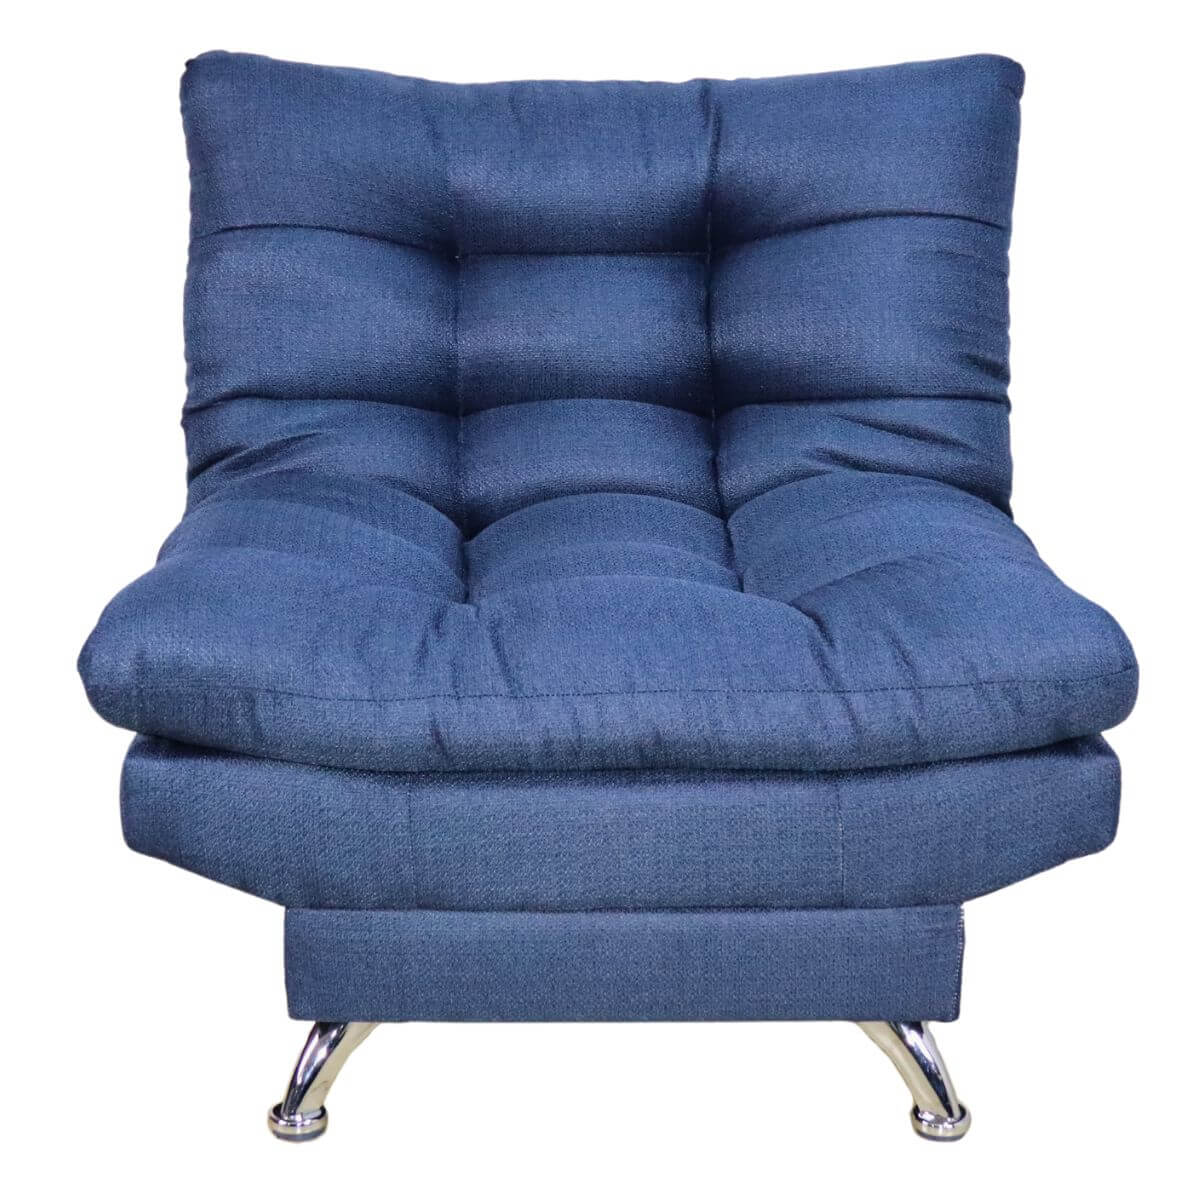 comprar sillón ocasional azul cerca de mi #color_marino